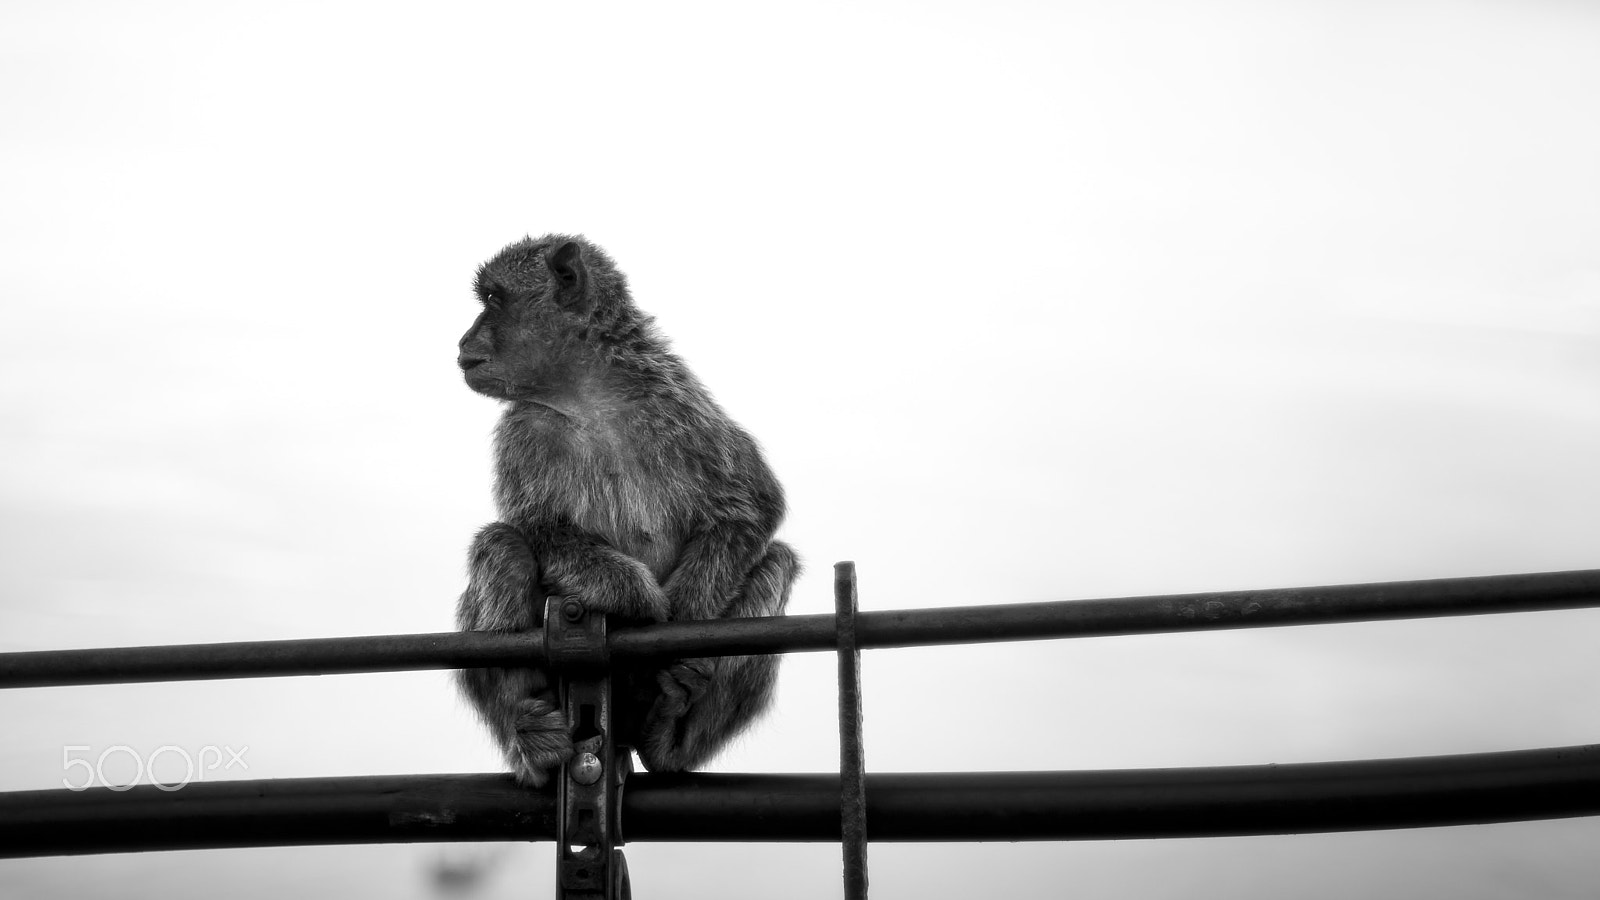 Nikon D3300 + Nikon AF Nikkor 50mm F1.4D sample photo. Monkey sitting on a fence photography